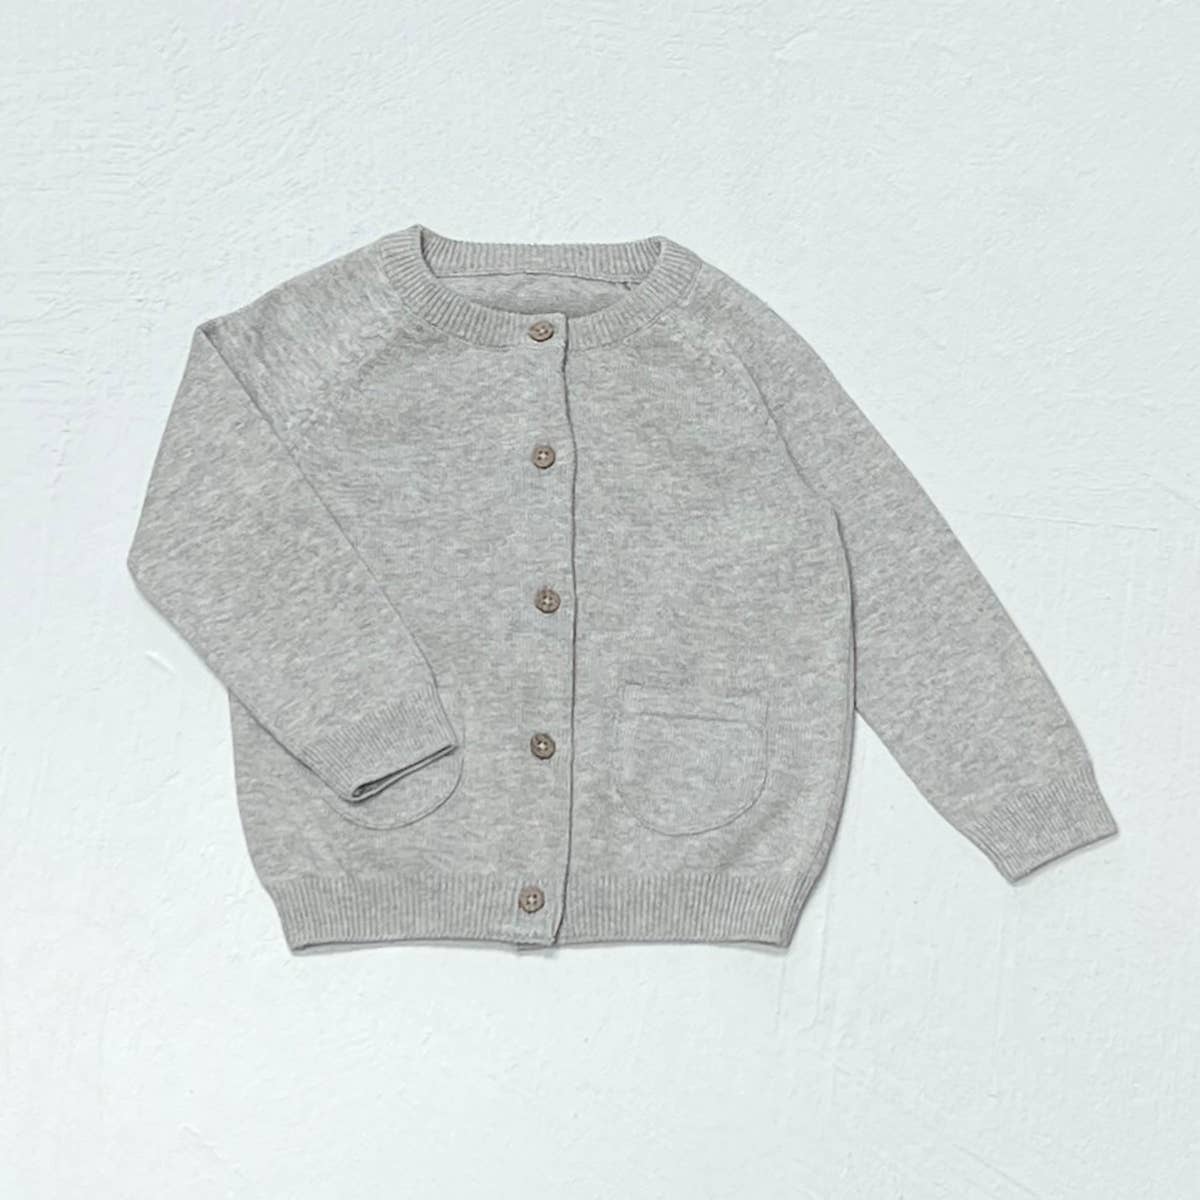 Milan Knit Organic Cotton Button Baby Cardigan Sweater